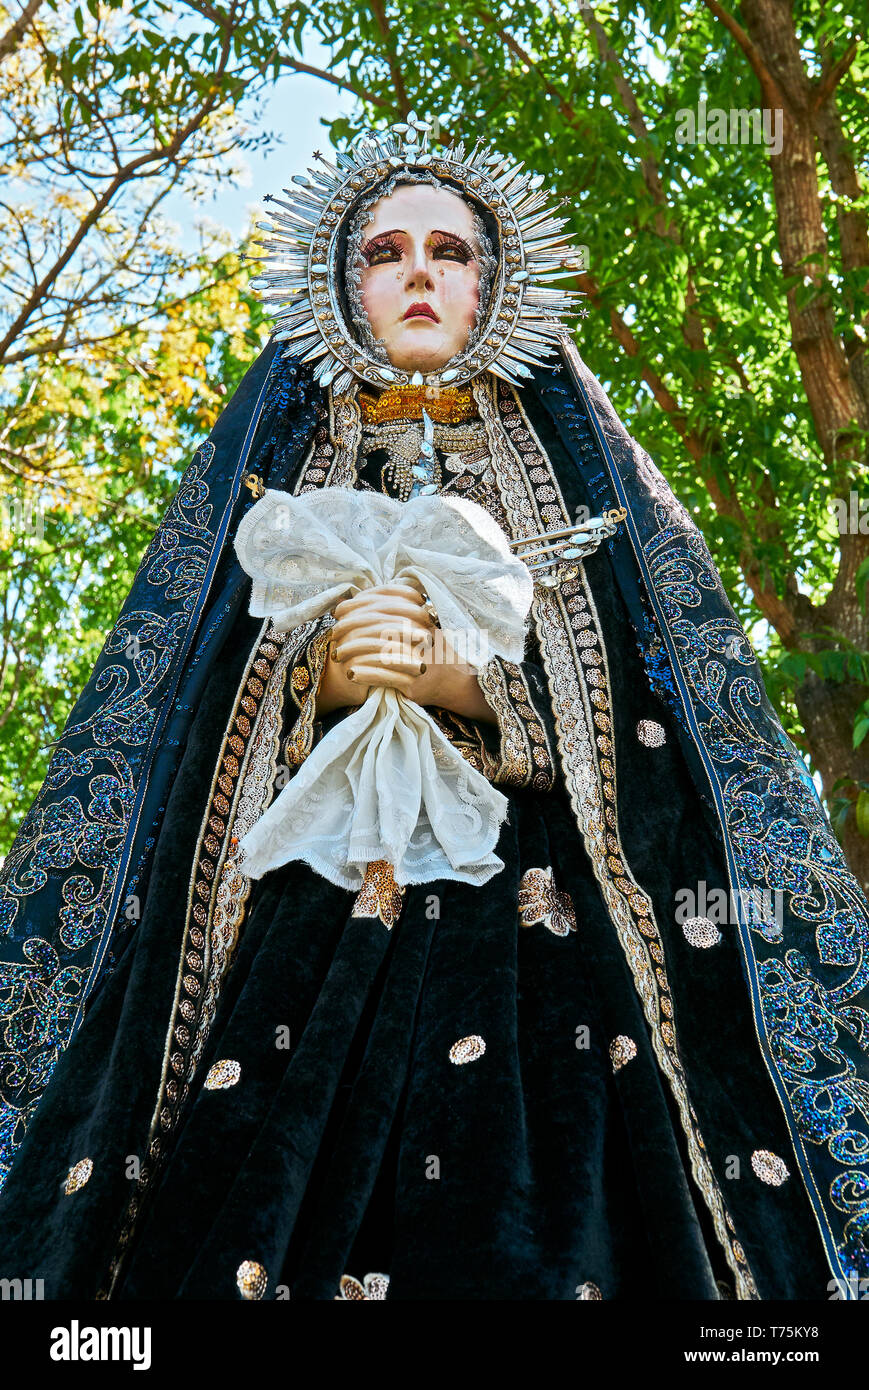 Leon, Iloilo, Filipinas: vista aislada de una estatua de la Madre María, Mater Dolorosa, en una procesión alrededor de la iglesia Foto de stock